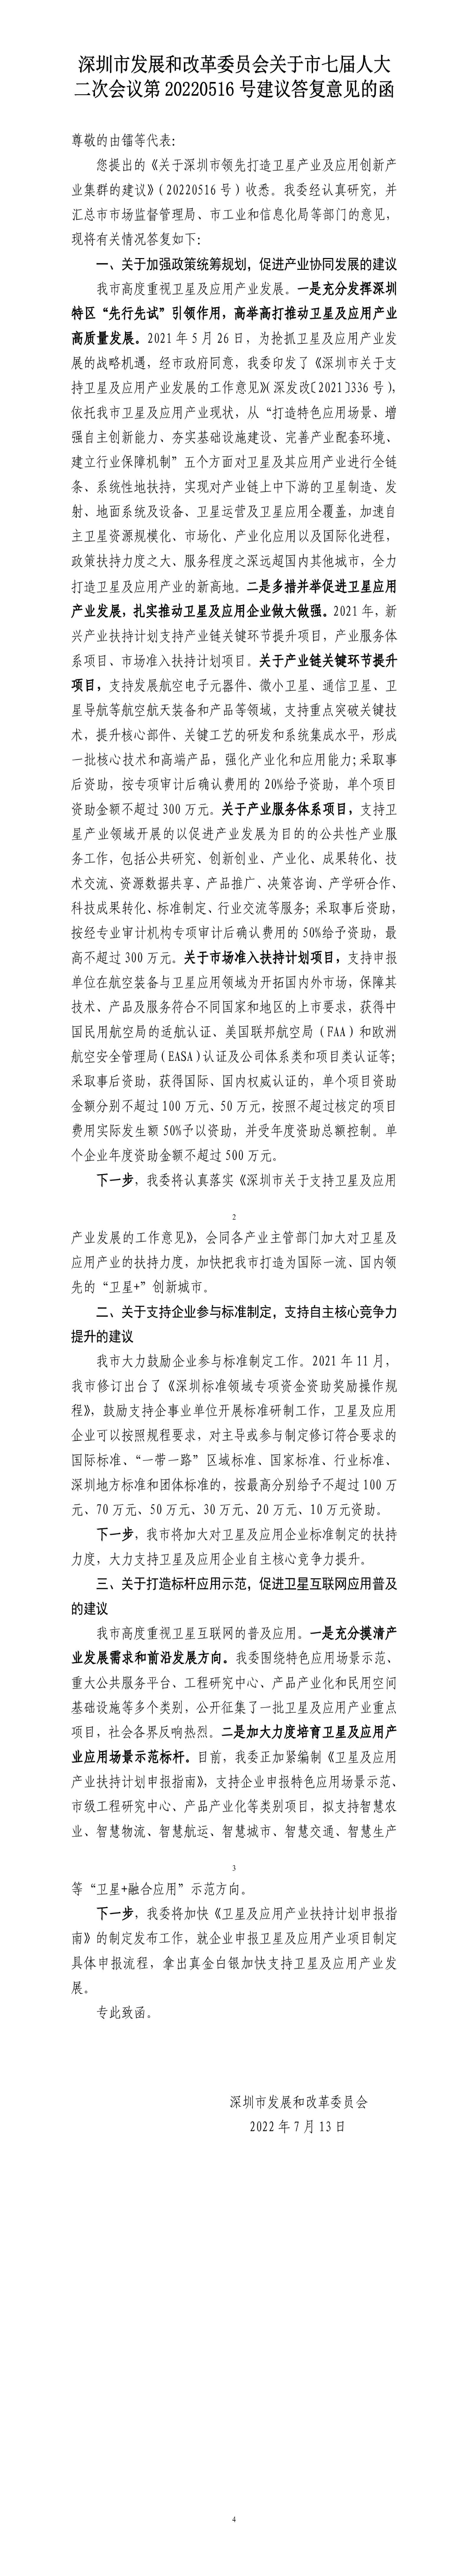 深圳市发展和改革委员会关于市七届人大二次会议第20220516号建议答复意见的函.jpg